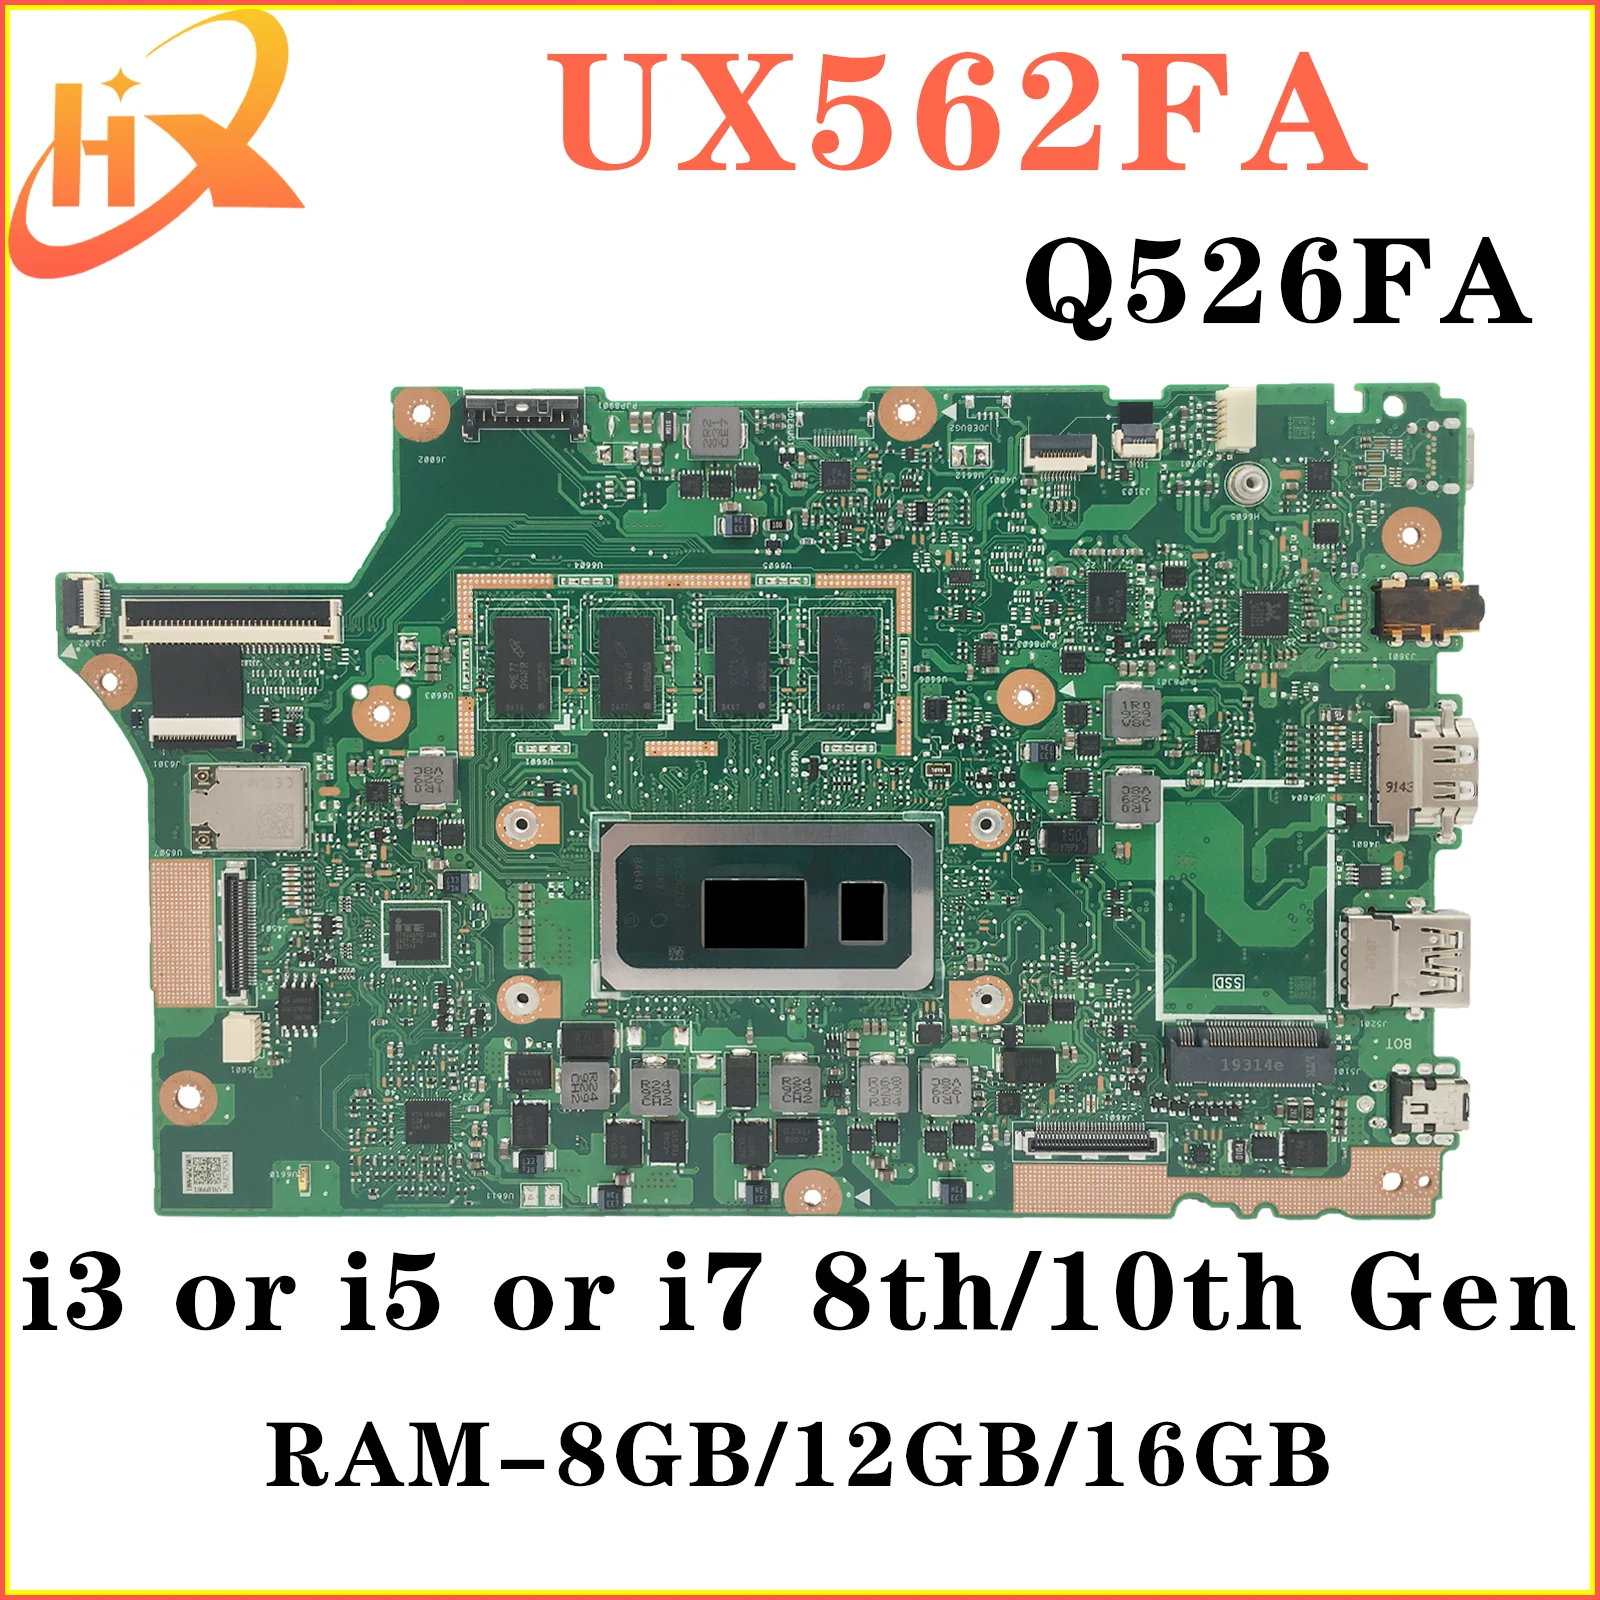 UX562FAC Материнская плата ASUS UX562FA UX562F Q526FA Q526FAC Q526F материнская плата для ноутбука i5 i7 8/10-го поколения RAM-8GB/12GB/16GB материнская плата kefu материнская плата asus rog gl752vl gl752vw gl752vwm gl752vlm zx70v fx71pro для ноутбука i5 i7 6 го поколения gtx960m gtx965m